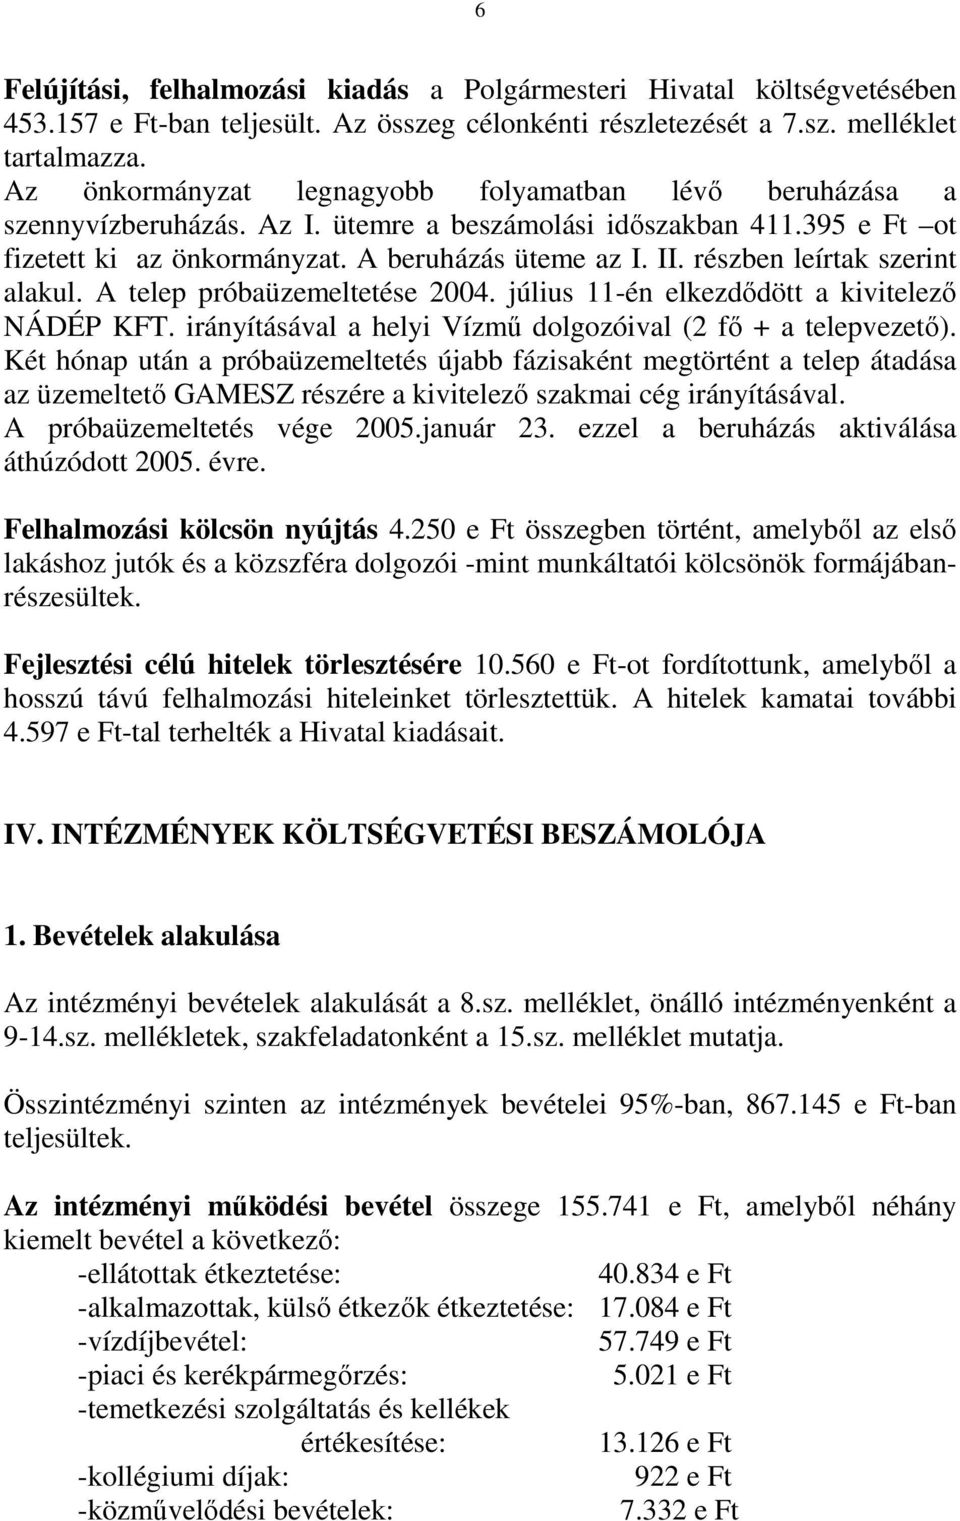 részben leírtak szerint alakul. A telep próbaüzemeltetése 2004. július 11-én elkezdıdött a kivitelezı NÁDÉP KFT. irányításával a helyi Vízmő dolgozóival (2 fı + a telepvezetı).